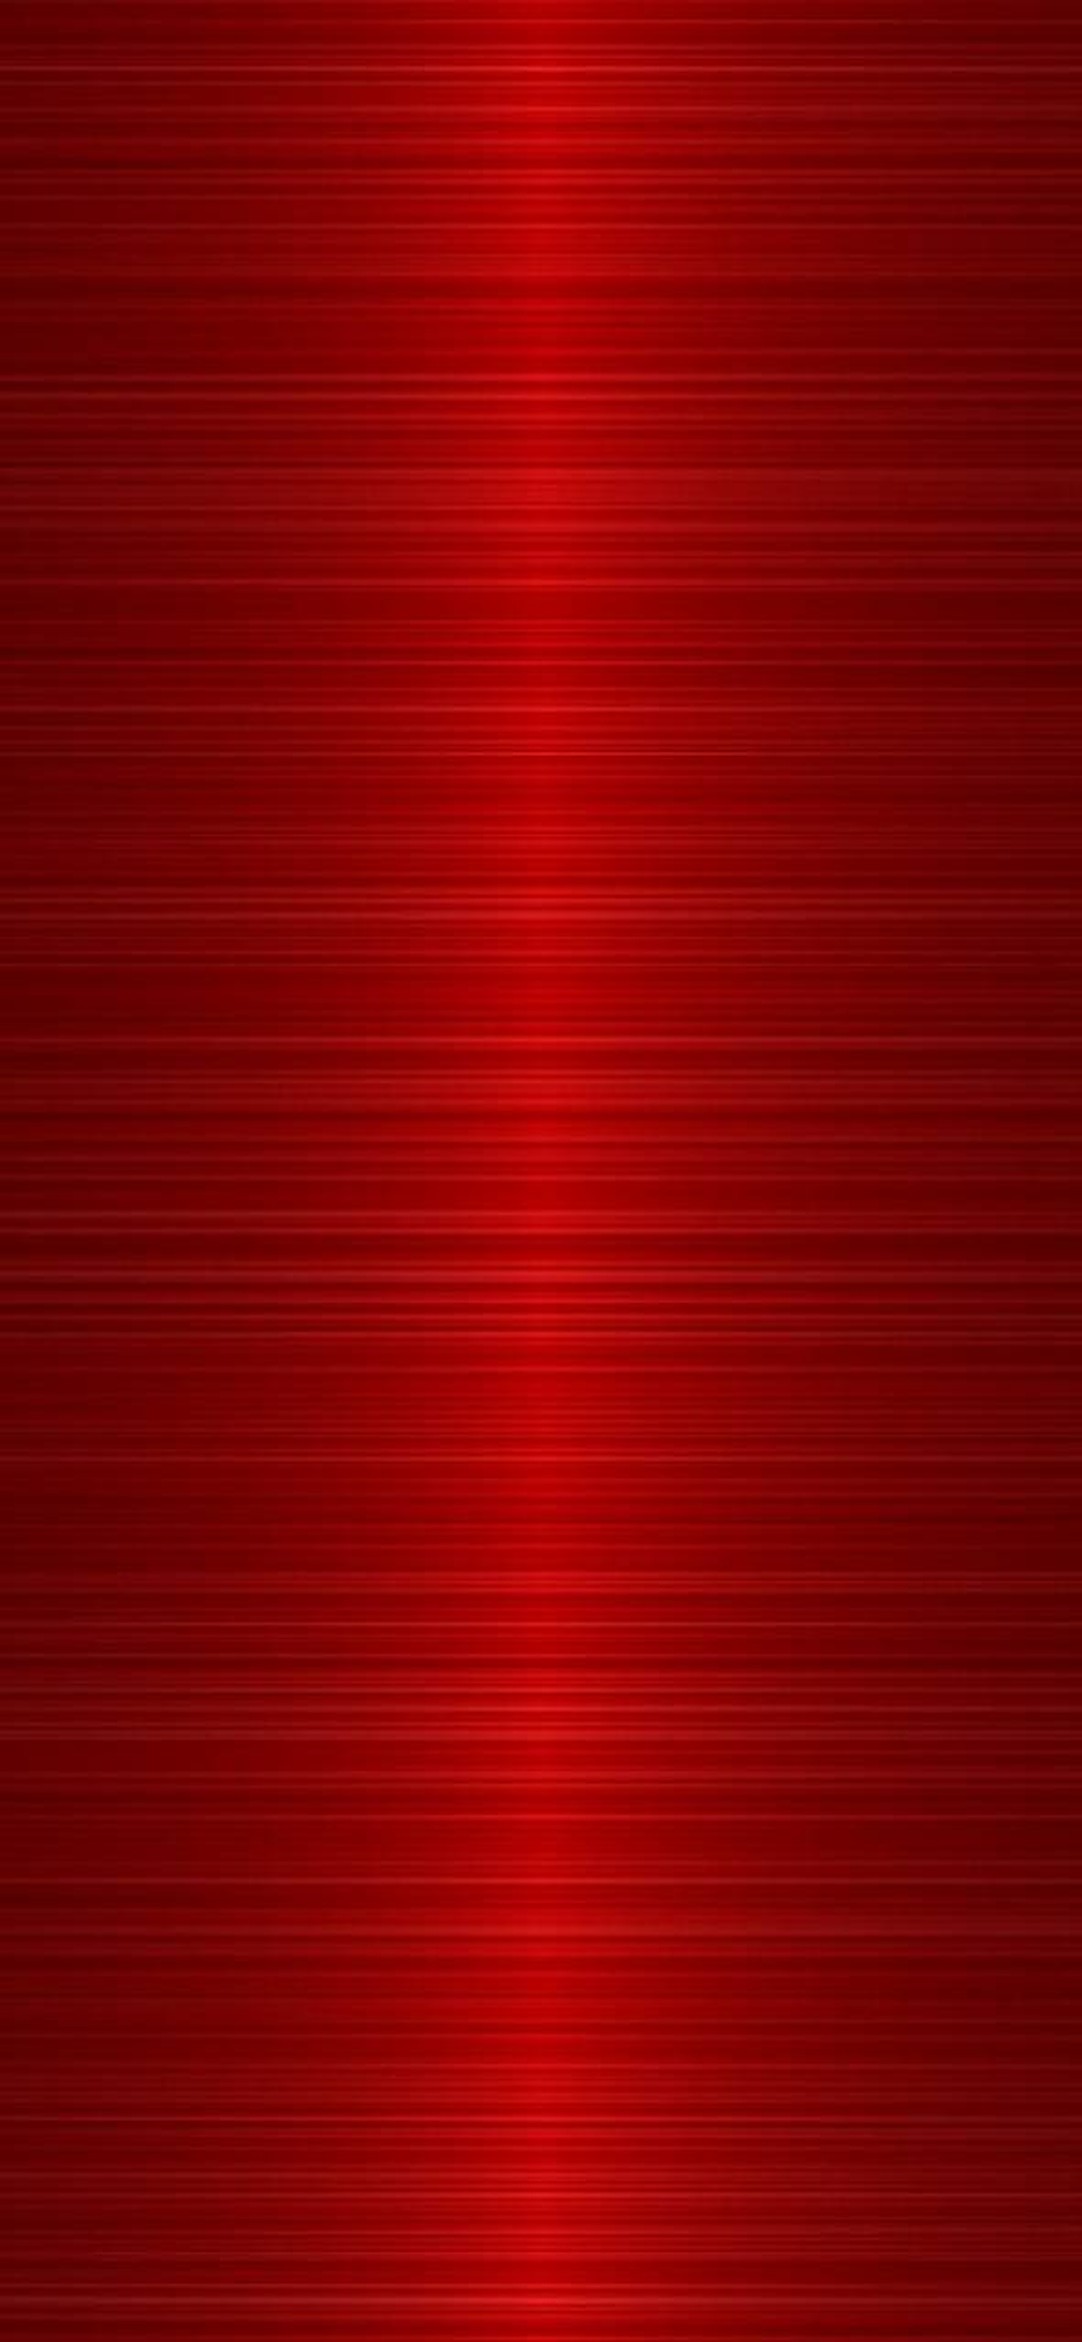 Hình nền đỏ HD - Hình nền độ phân giải cao giúp tạo nên sự tinh tế và chân thật cho màn hình điện thoại của bạn. Với bức hình nền đỏ HD tuyệt đẹp, bạn sẽ cảm thấy thích thú khi sử dụng điện thoại. Chúng tôi cập nhật liên tục những hình nền đỏ HD mới nhất để mang đến cho bạn trải nghiệm tuyệt vời nhất.